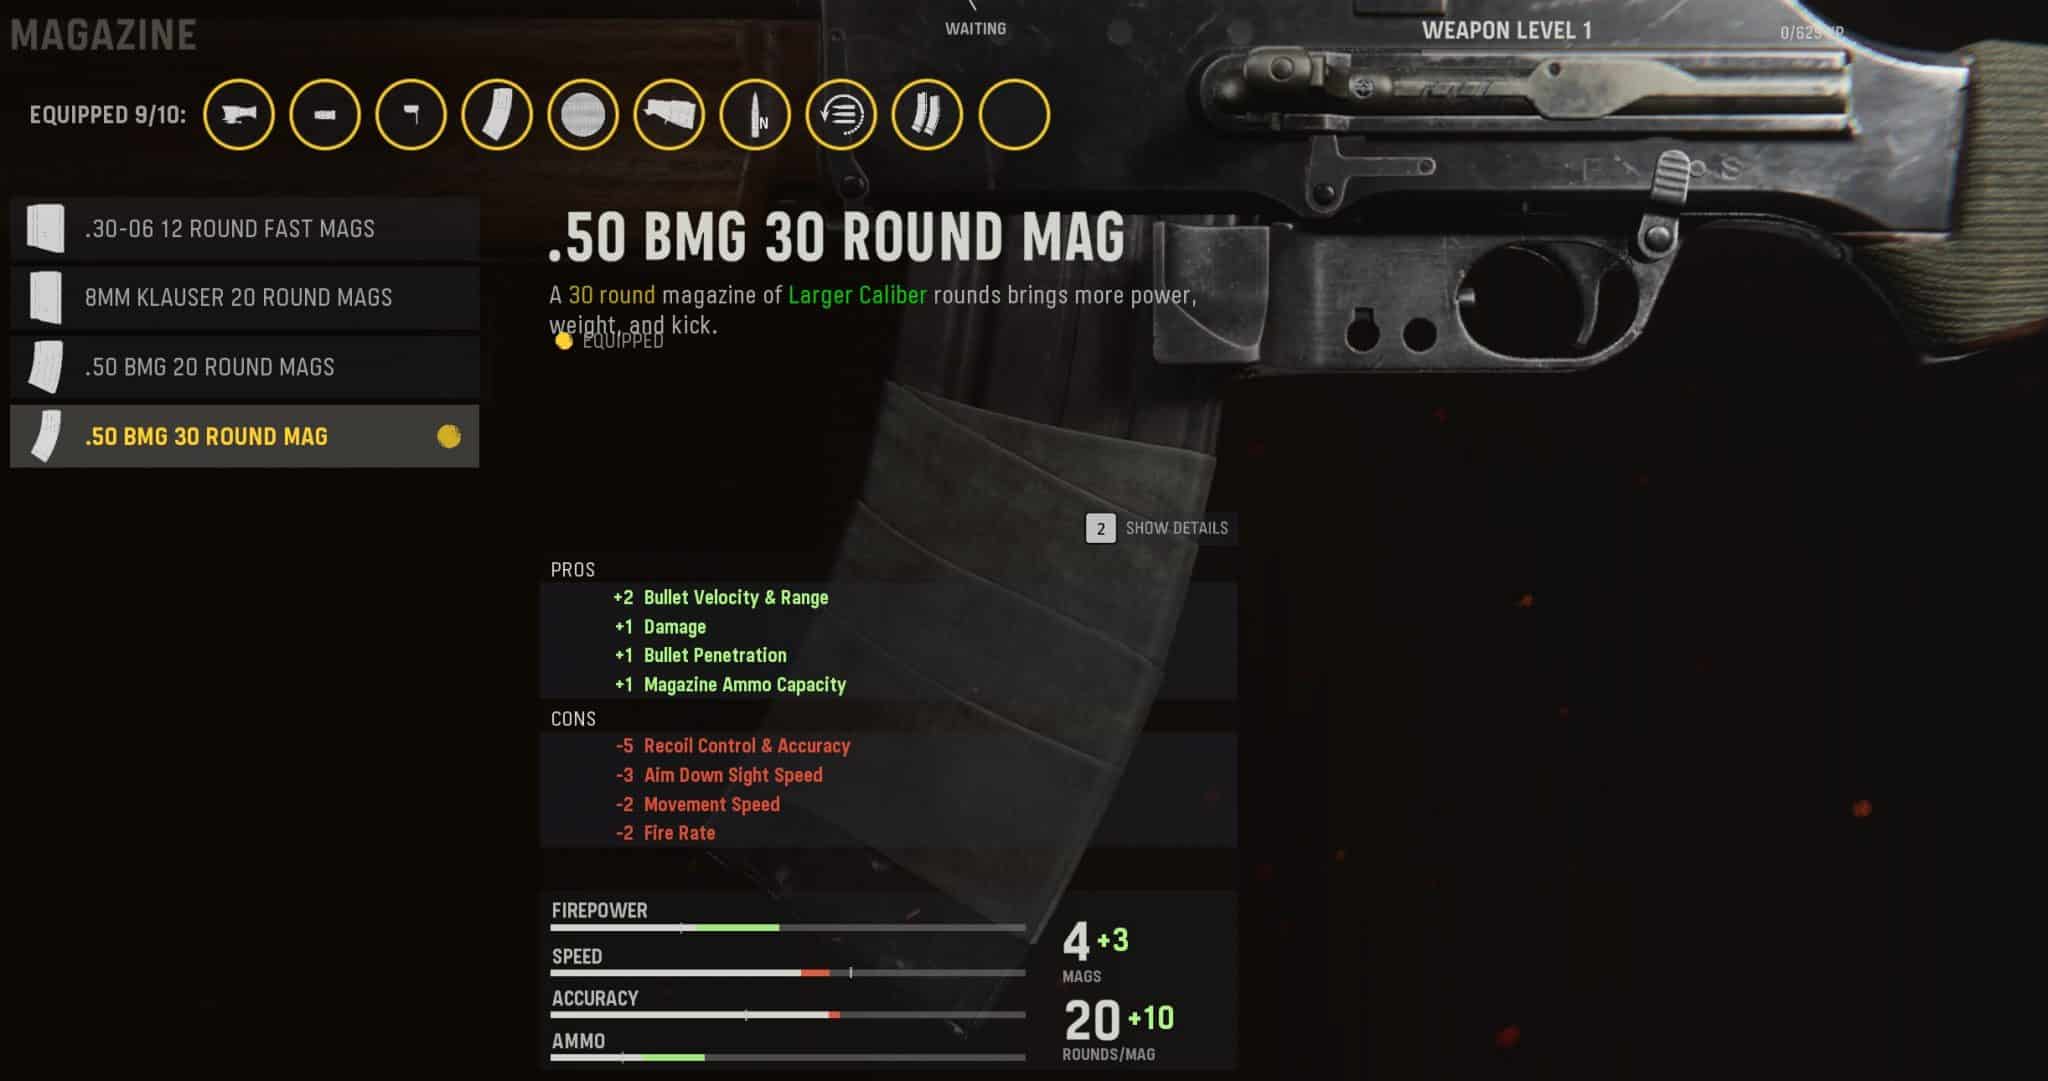 .50 BMG 30 Round Mag attachment in Vanguard